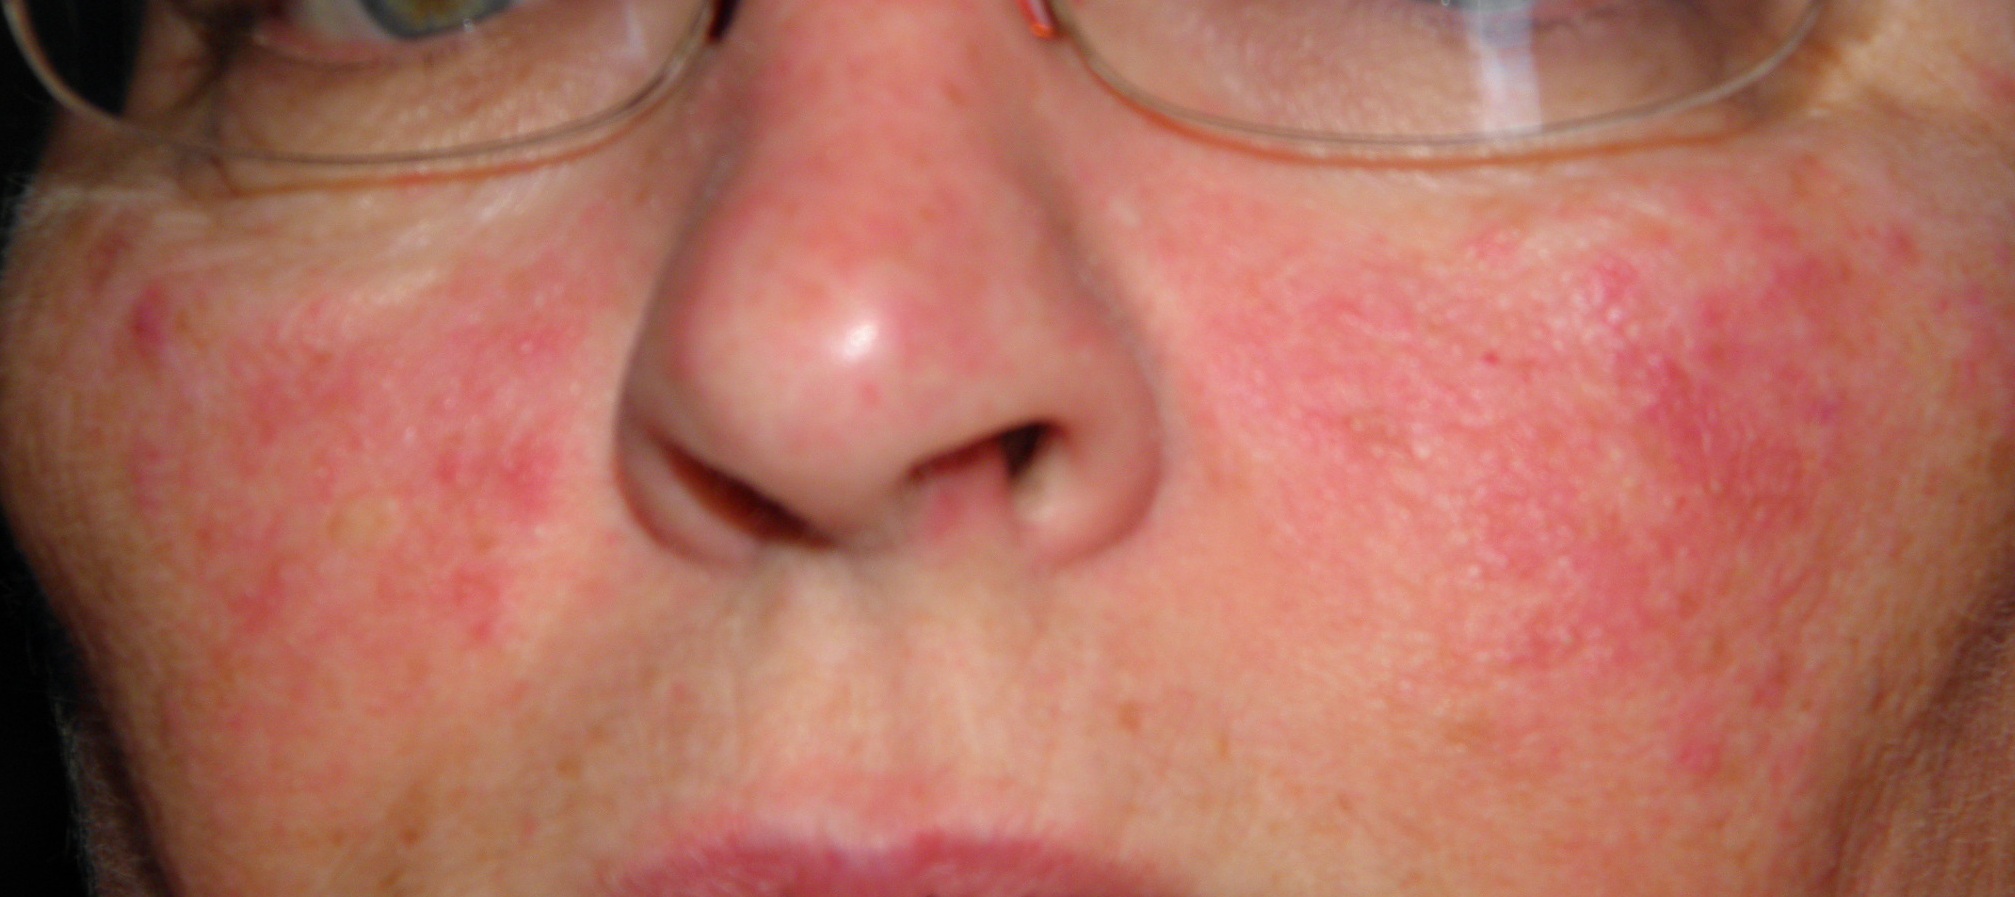 Facial Rash - Symptoms, Causes, Treatments - Healthgrades